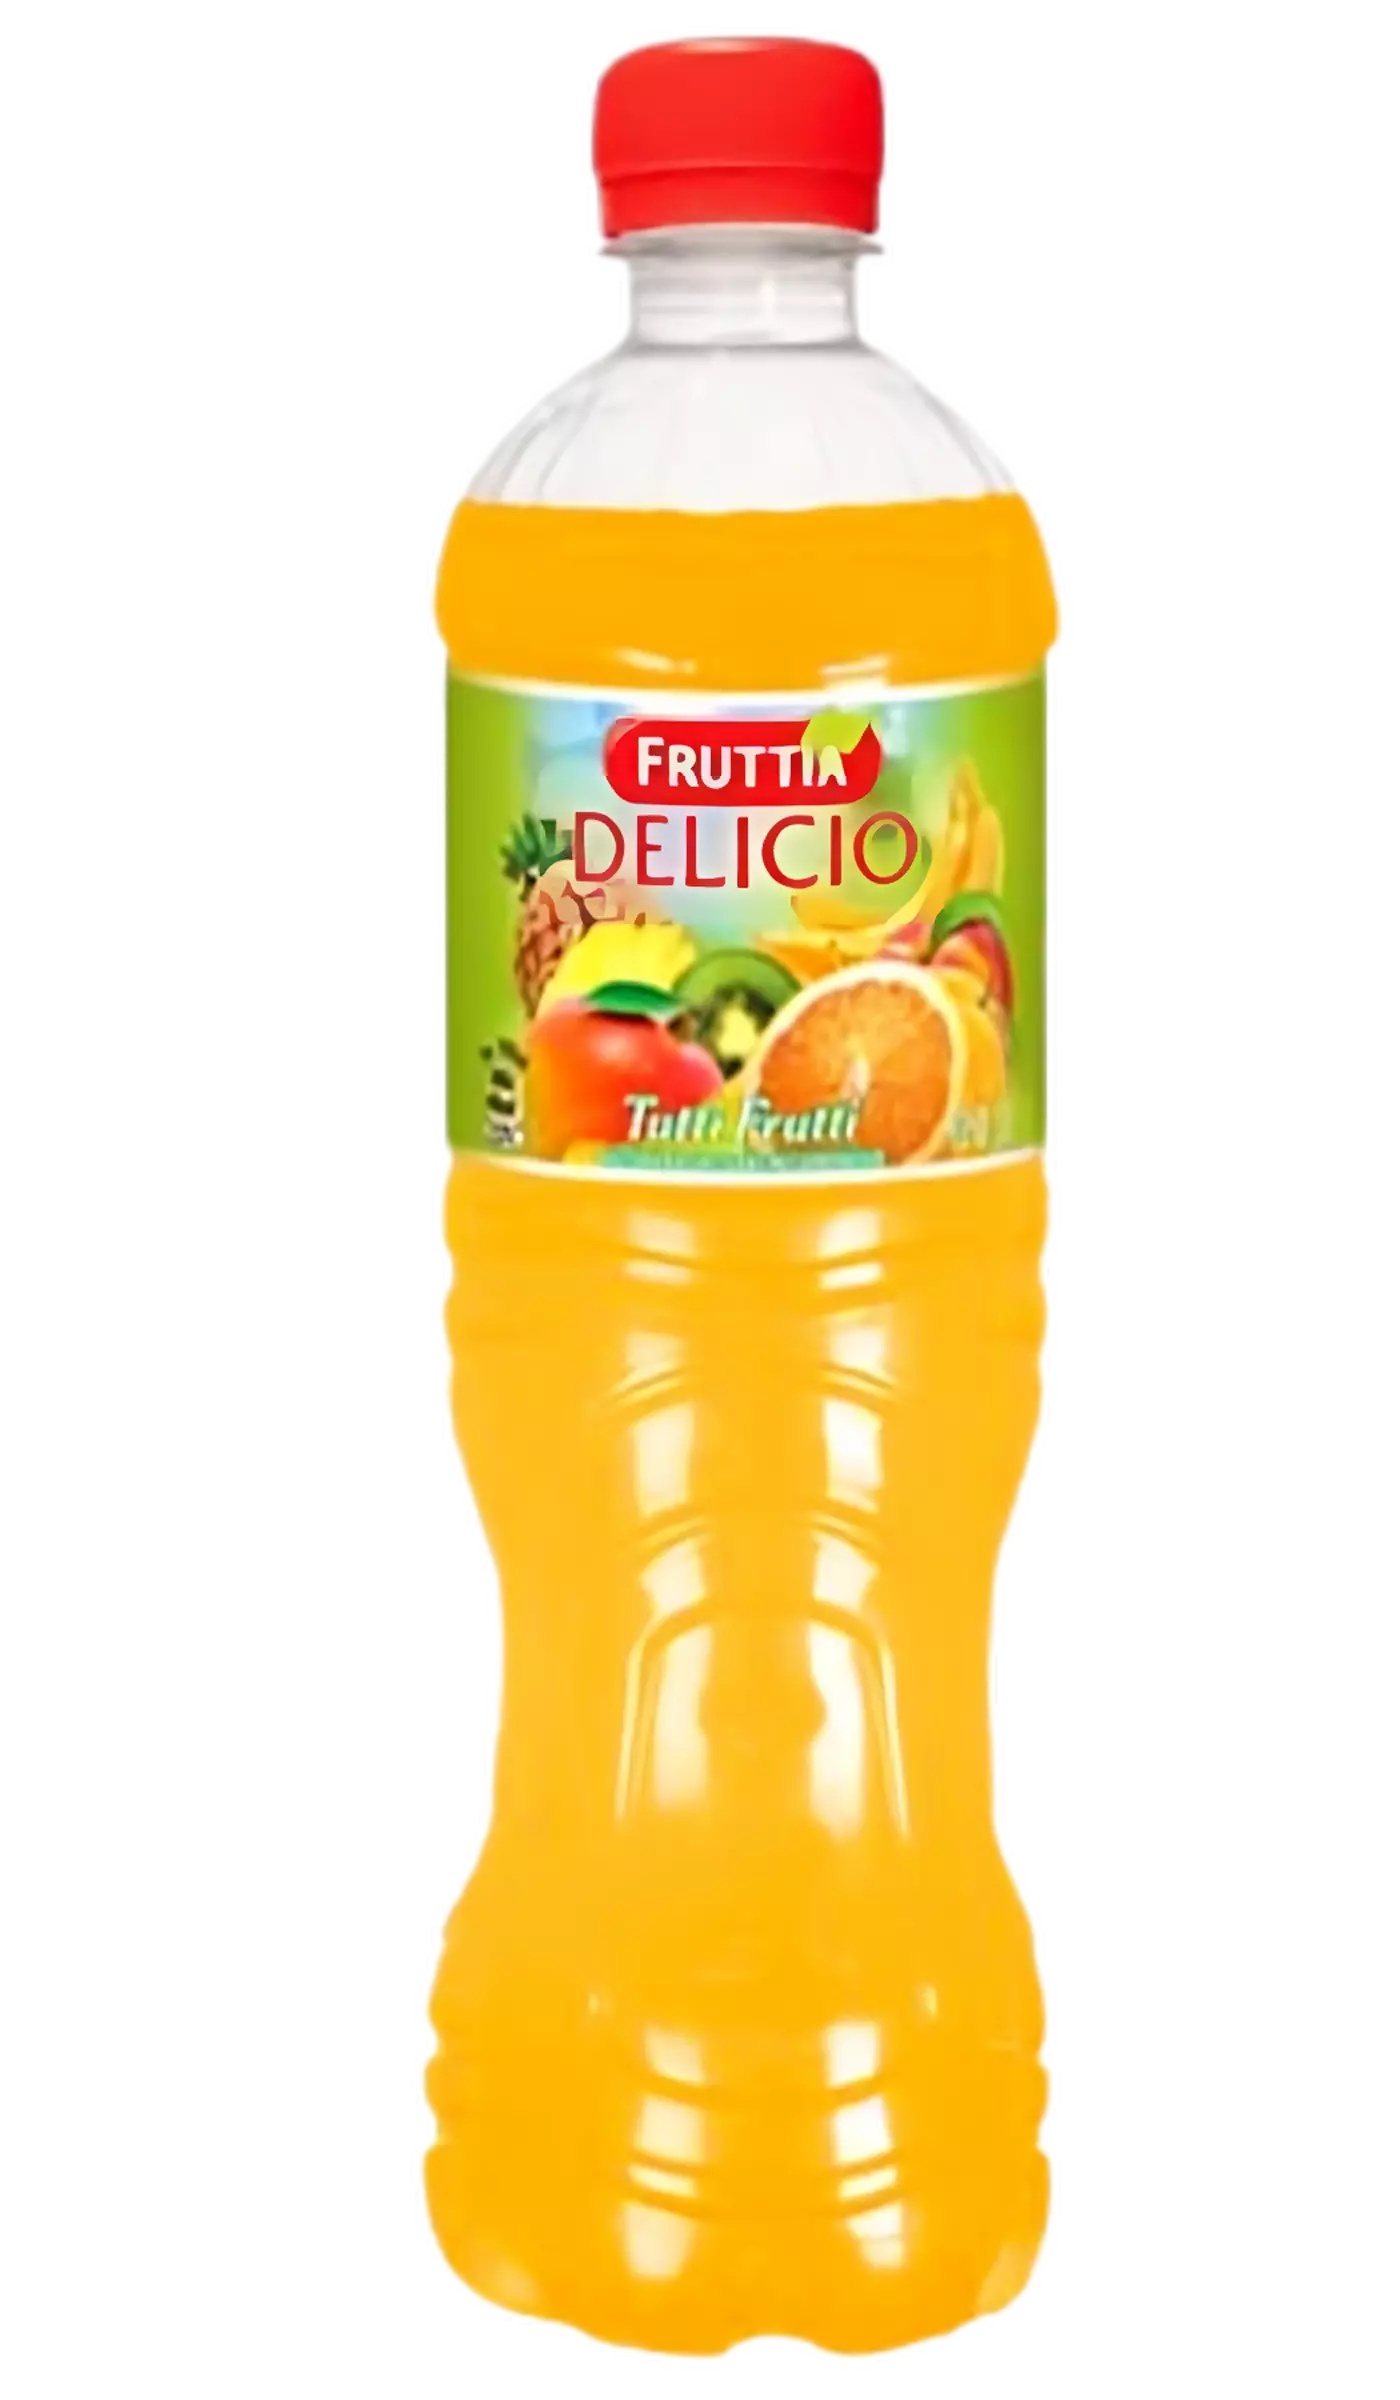 Fruttia Delicio Tutti Frutti 0,5l PET